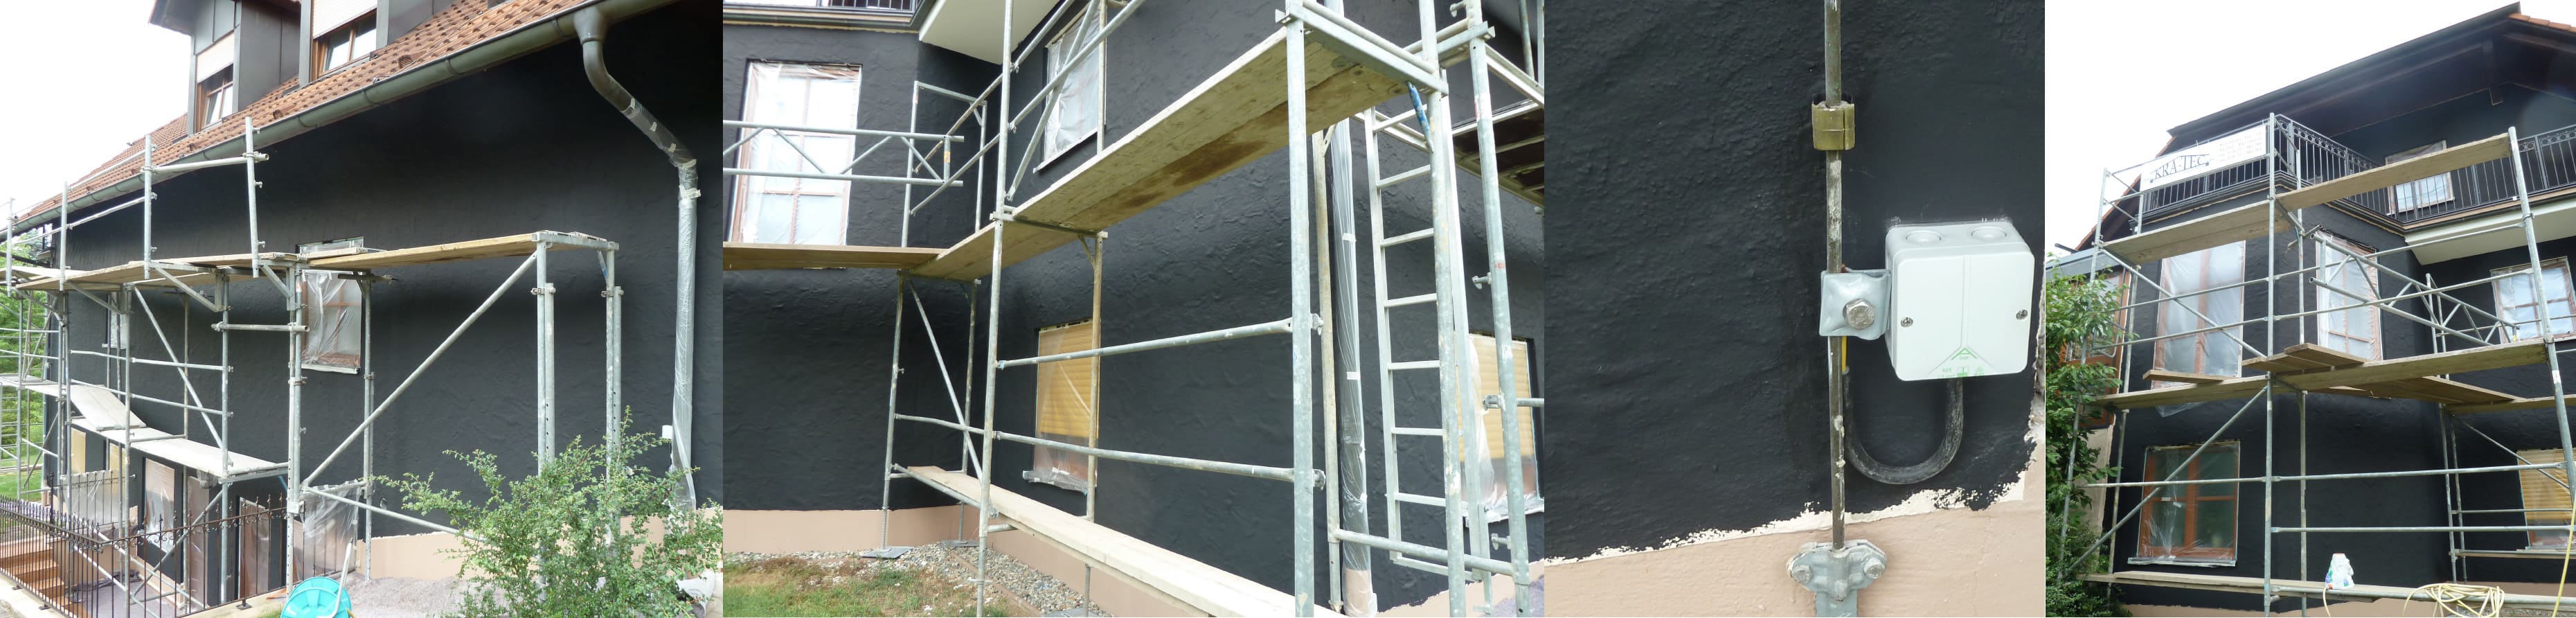 Mise en oeuvre peinture anti ondes HSF54 sur la façade d'une maison 